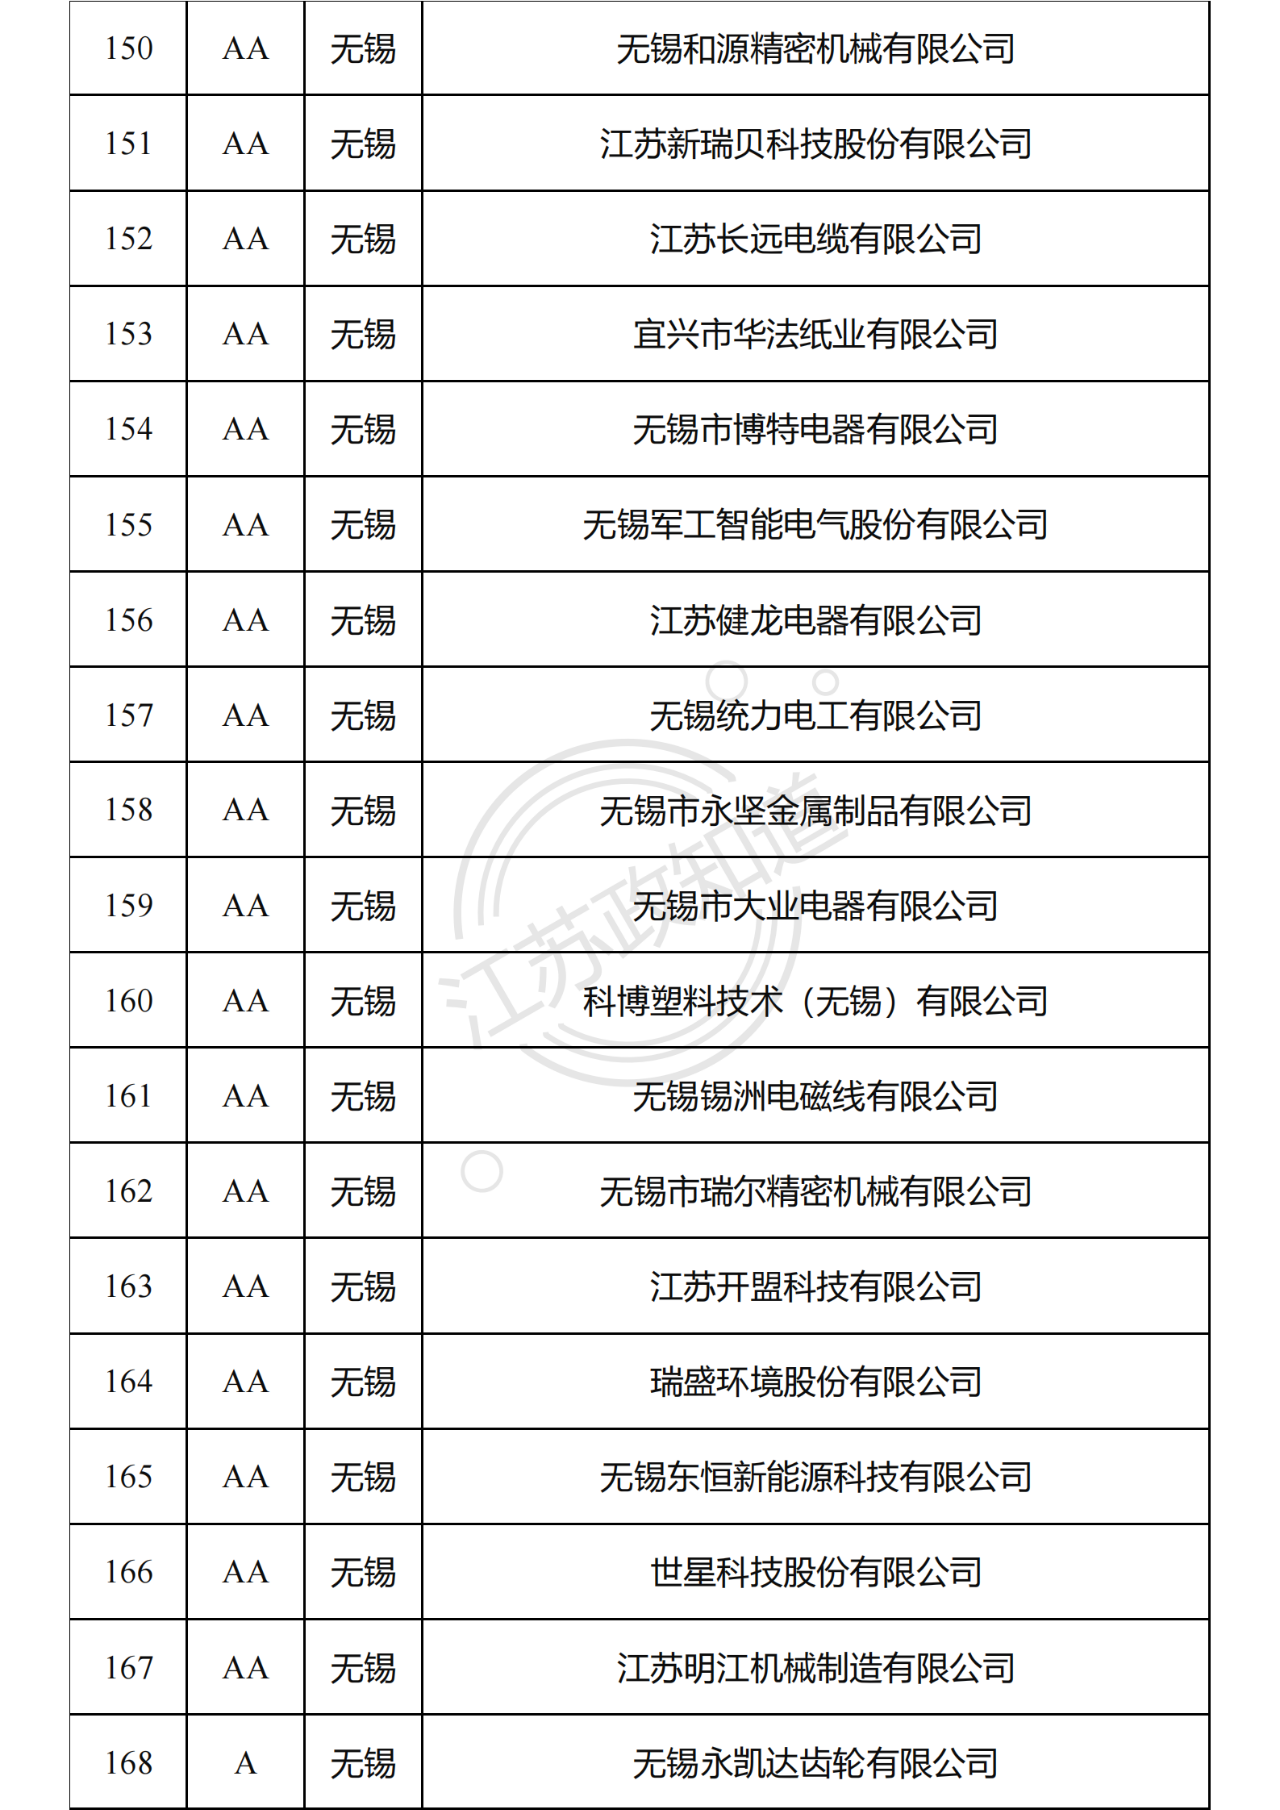 2022年度江苏省两化融合管理体系贯标试点企业培育对象拟认定名单10.png